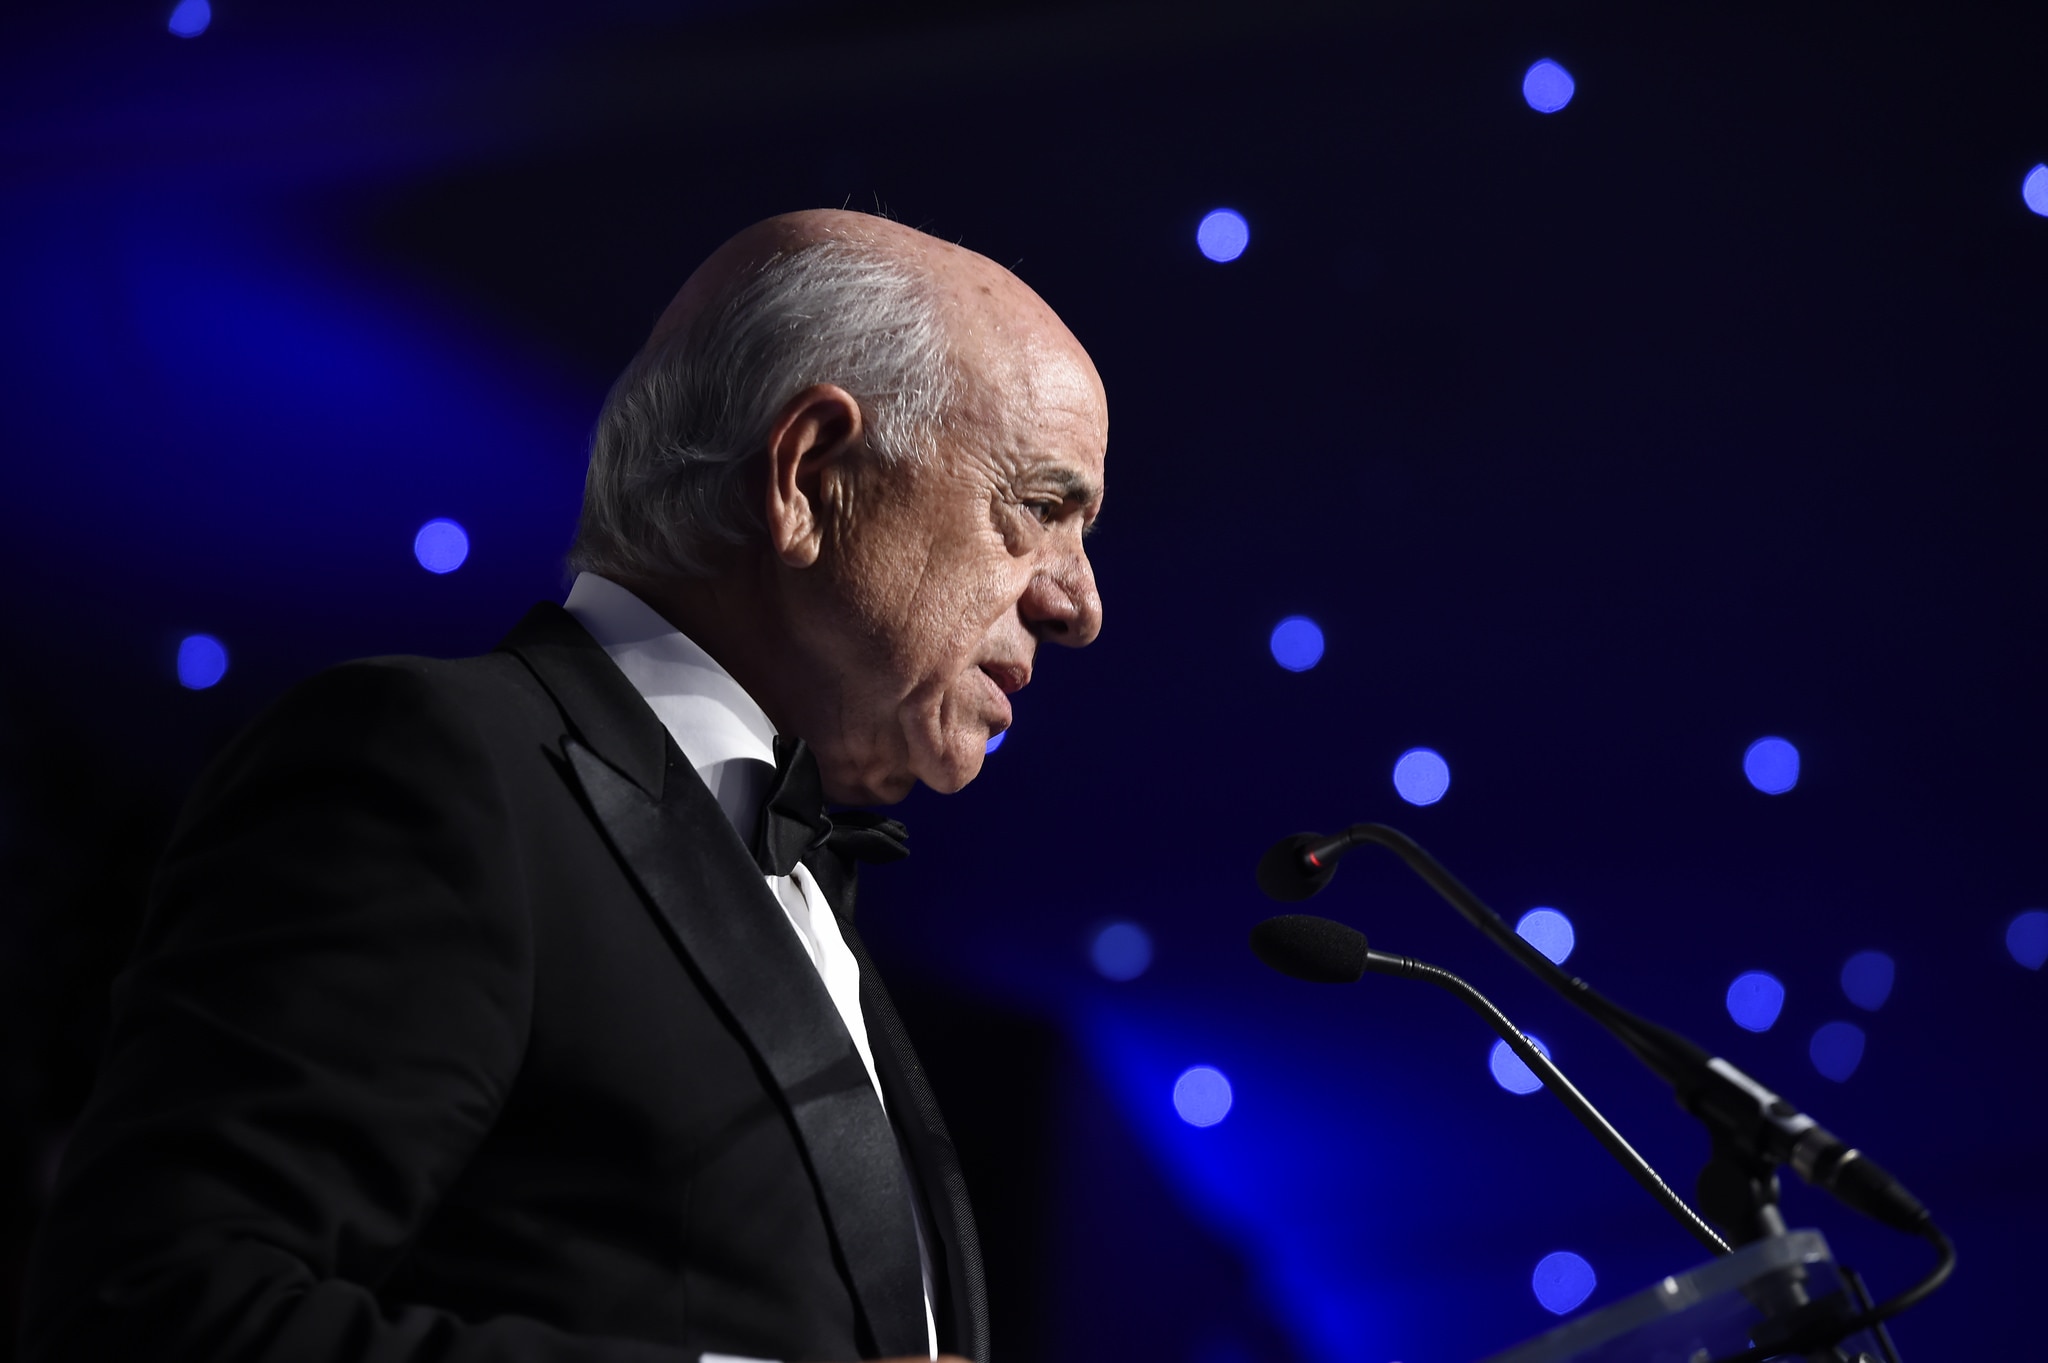 Francisco González durante su discurso en la gala de Euromoney donde ha sido elegido mejor banquero del año